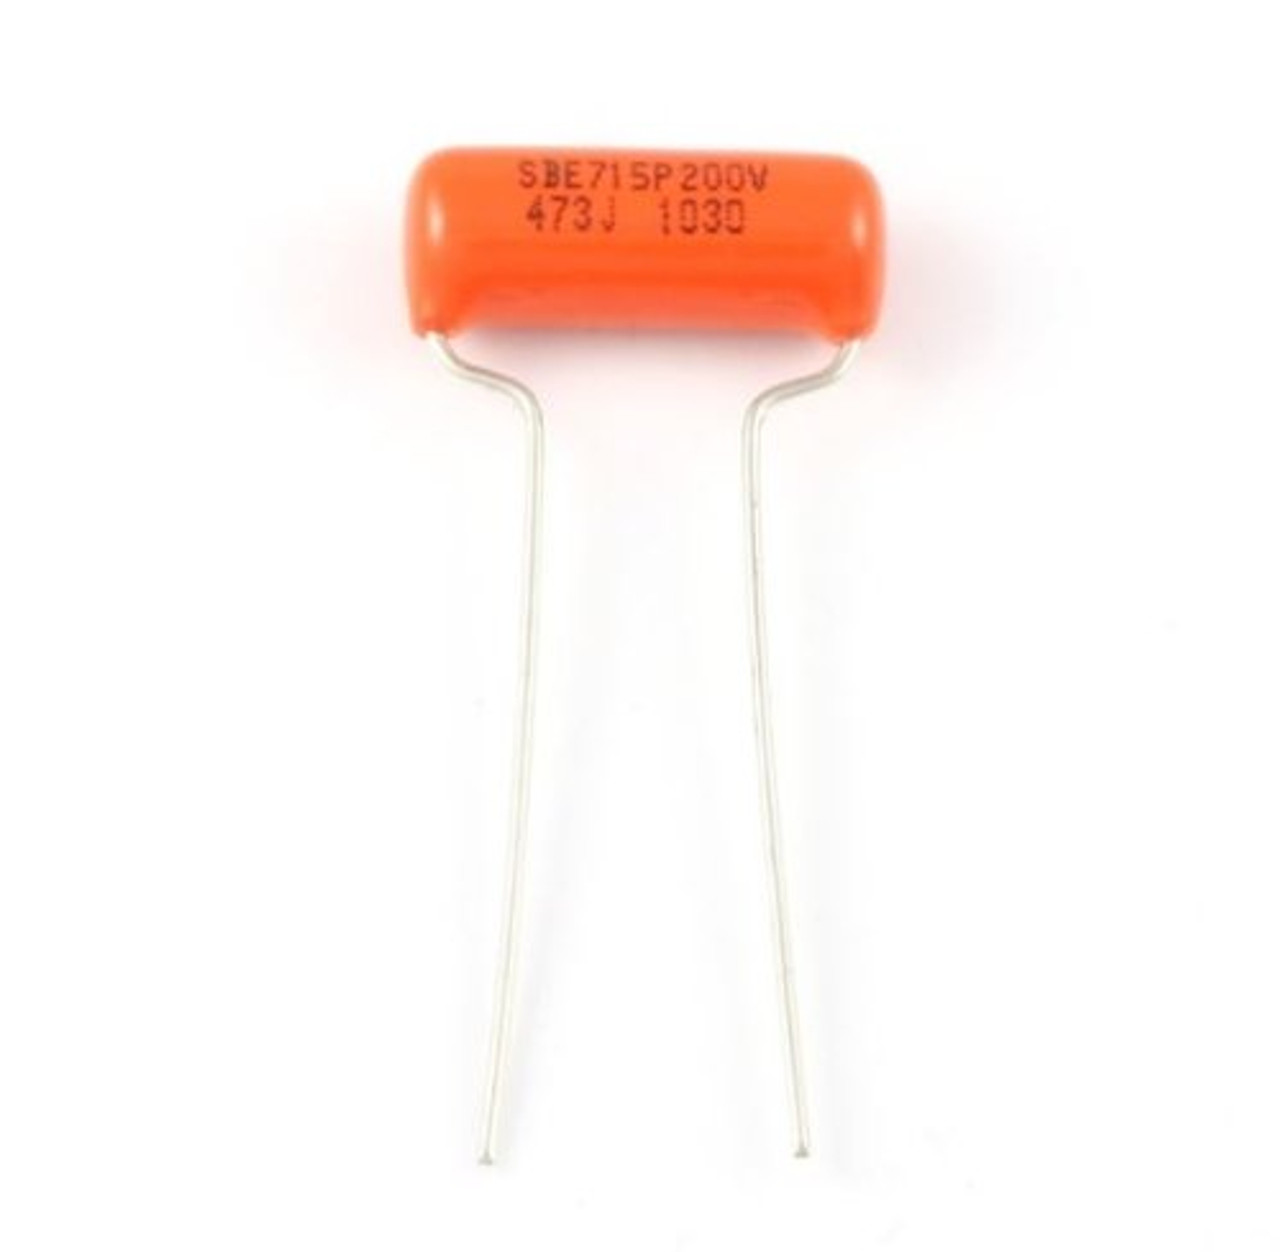 Orange Drop Capacitors .047 MFD 200V (3 pieces) EP-4383-000